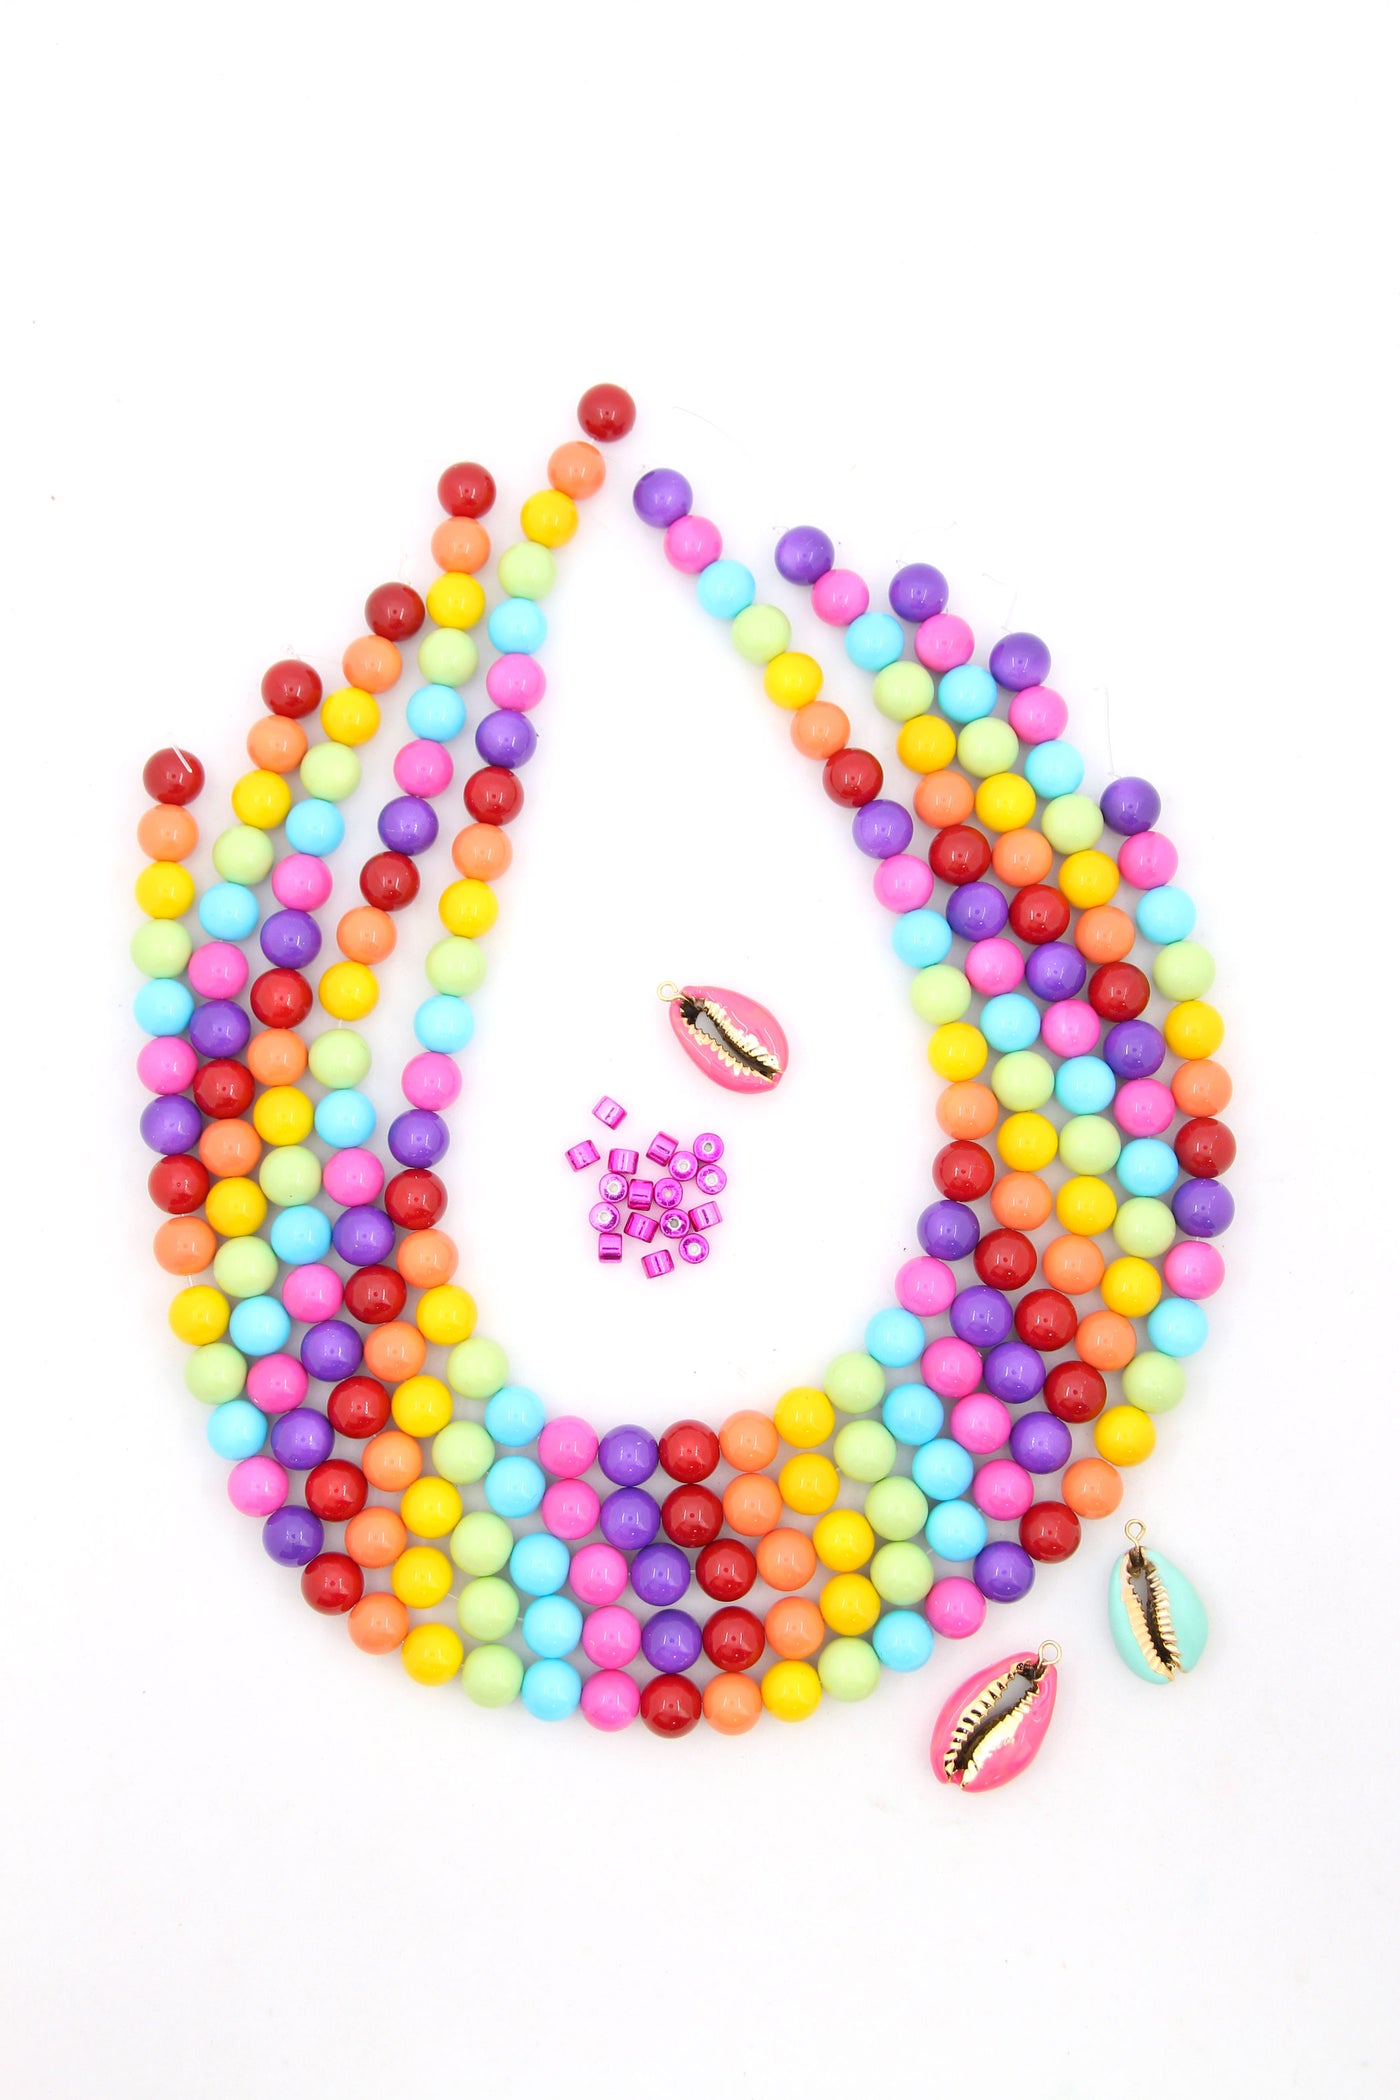 Ceramic Gumballs Round Rainbow Beads for DIY Jewelry, 10mm, 42 Beads